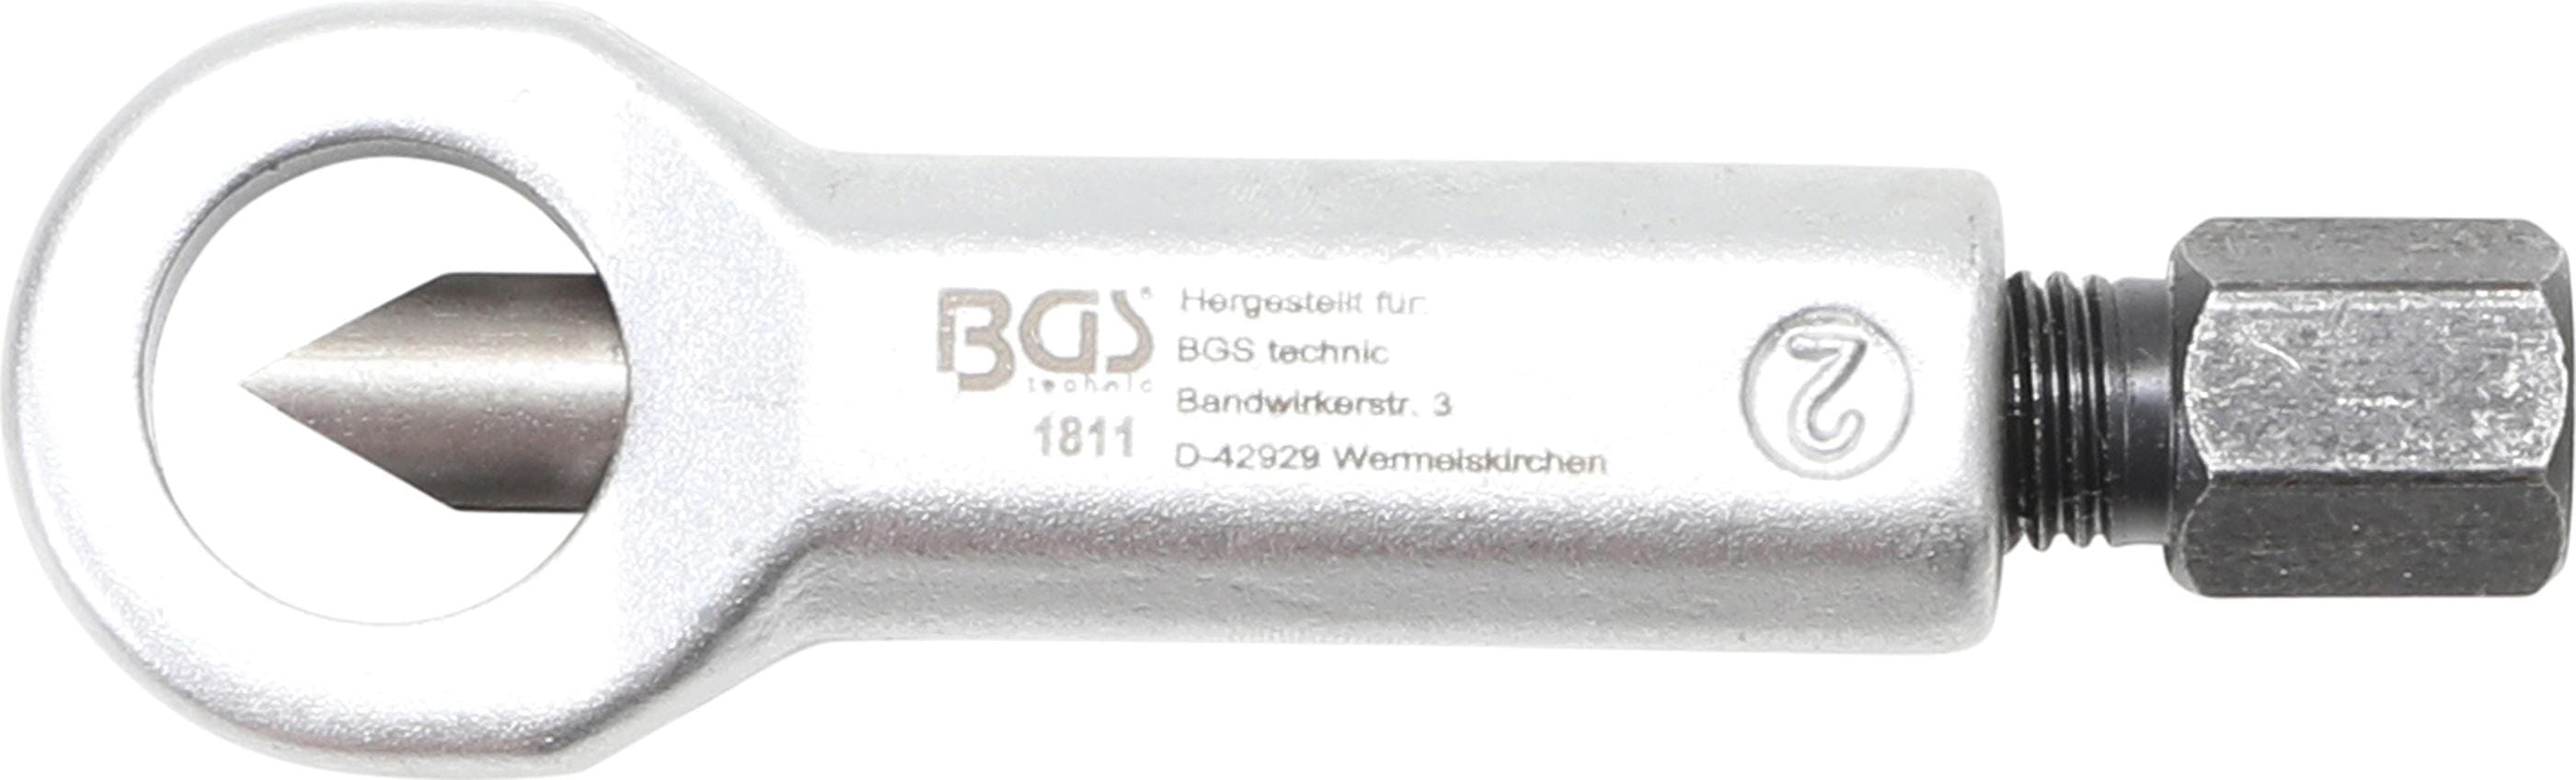 BGS technic Casse-écrous  jusqu'à 16 mm - BGS technic - 4026947018119